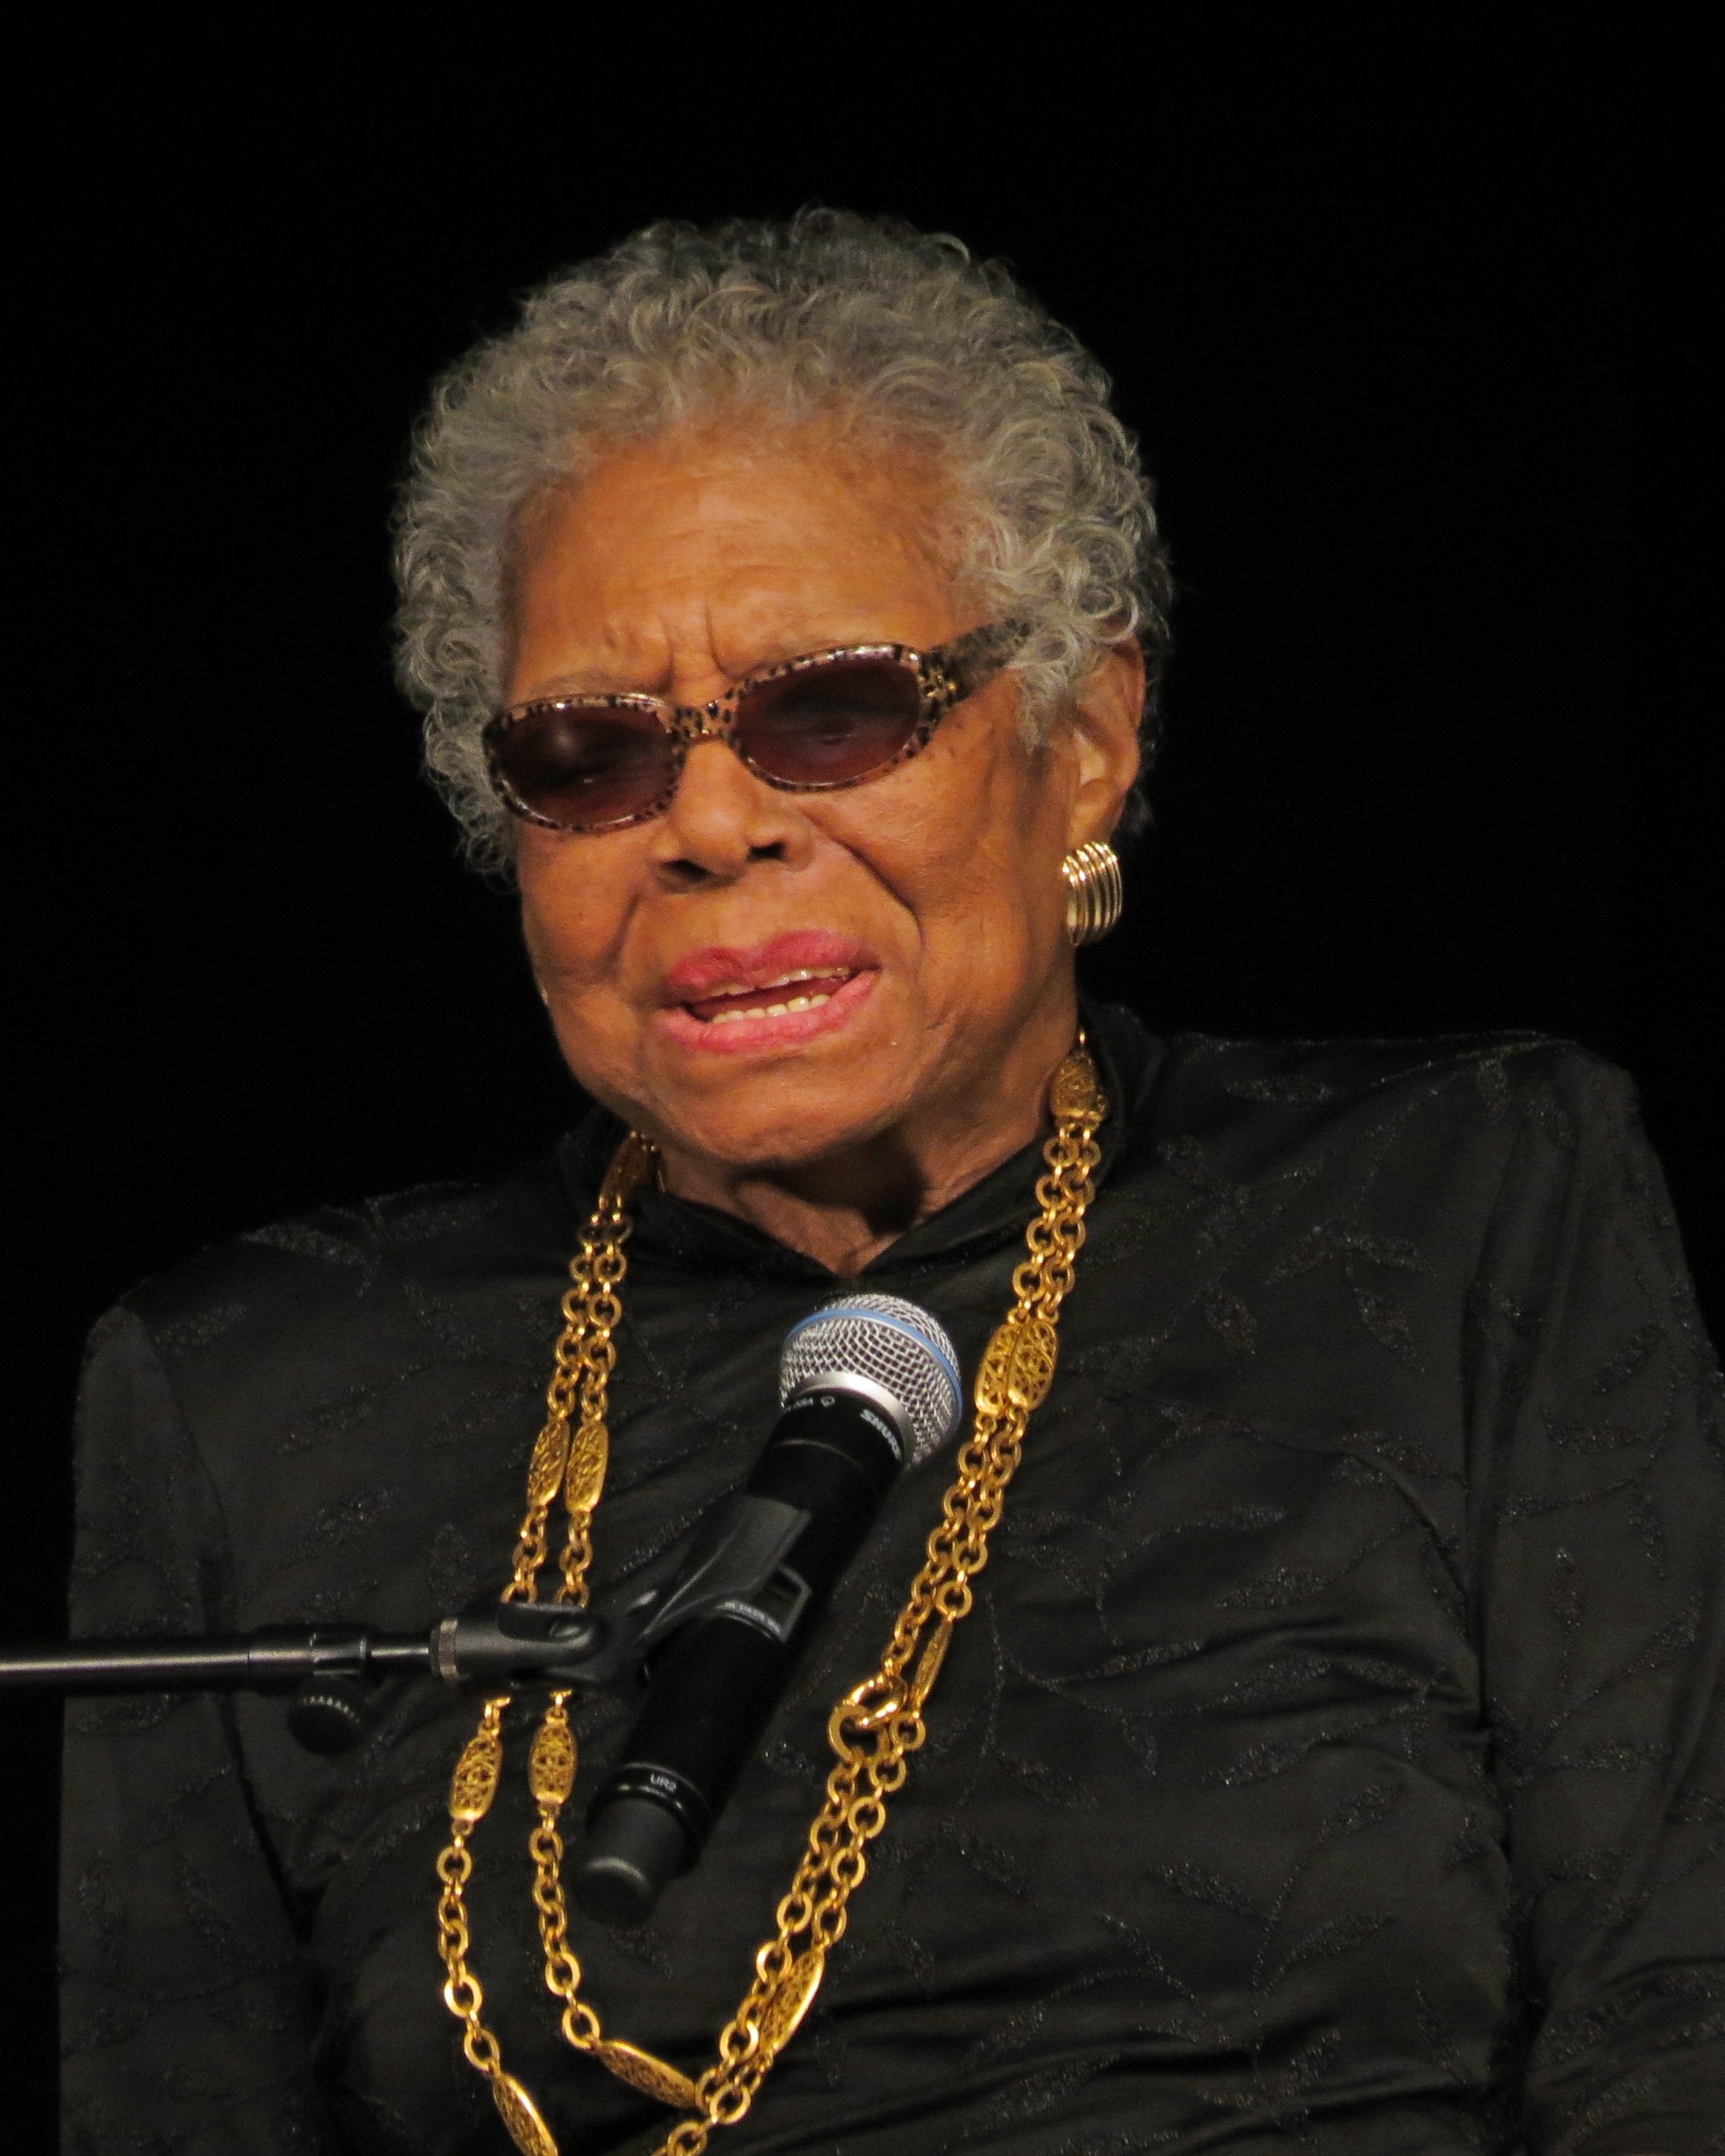 auteur Maya Angelou de la citation Toute mon histoire en tant que femme afro-américaine, en tant que femme juive, en tant que femme musulmane. J'apporte tout ce que j'ai jamais connu et toutes les histoires que j'ai lues - tout ce qui est bon, fort, gentil et puissant. J'apporte tout cela avec moi dans chaque situation, et je ne permettrai pas que ma vie soit minimisée par le racisme, le sexisme ou l'âgisme de qui que ce soit.